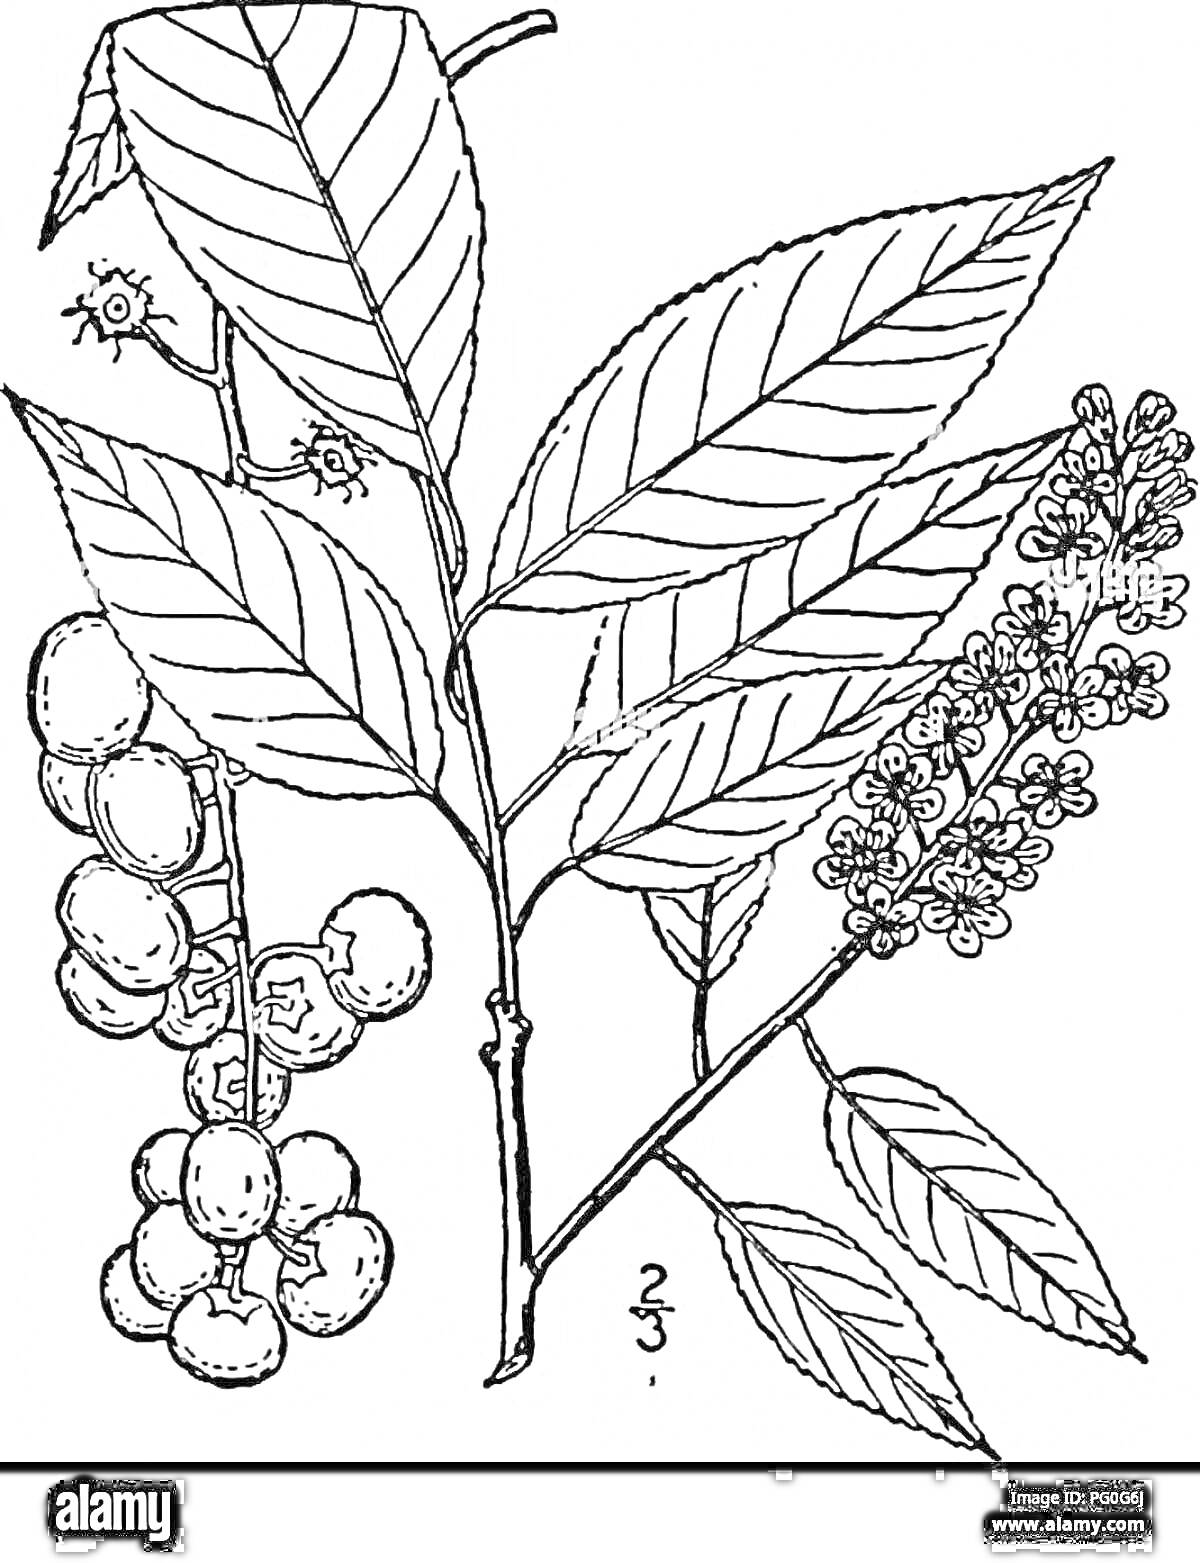 Раскраска Черемуха с листьями, кистями цветов и ягодами